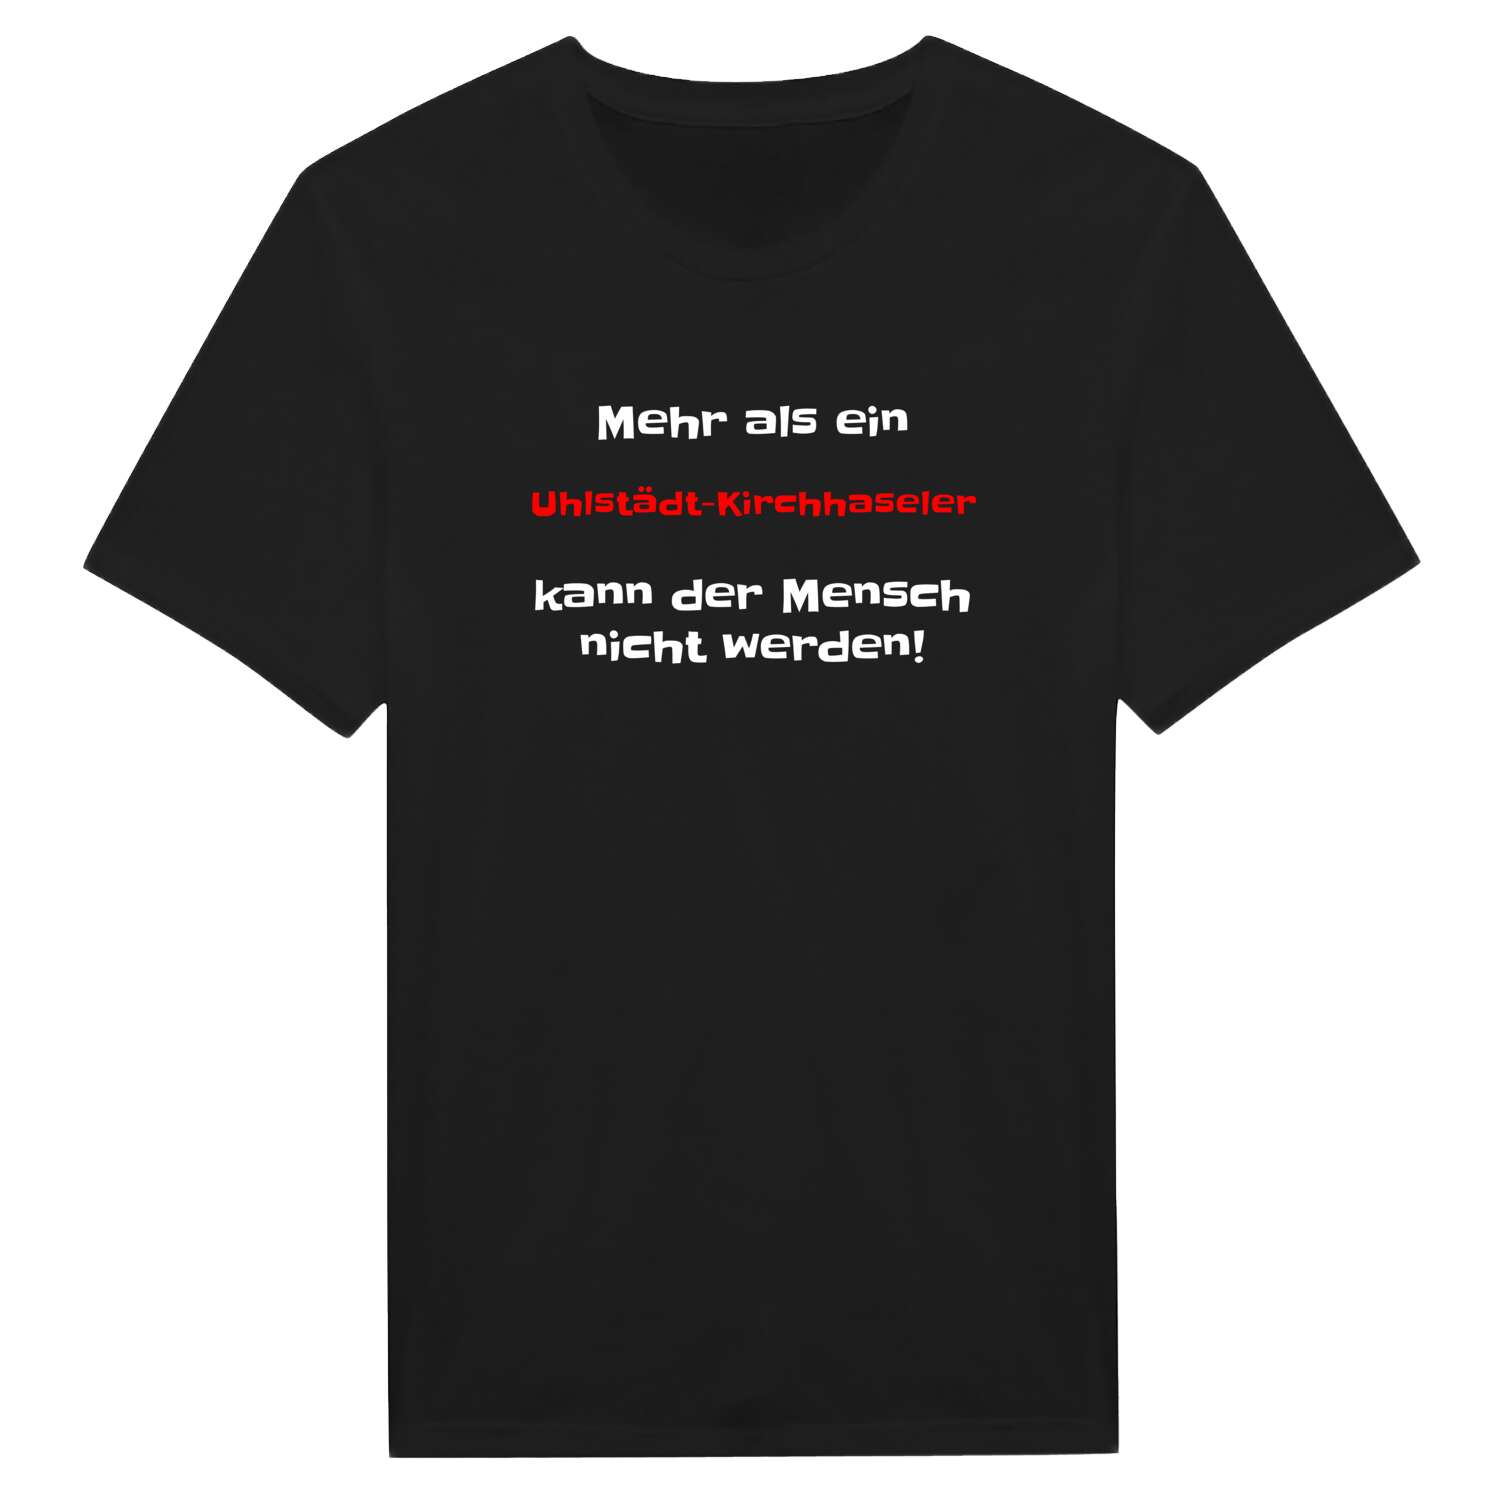 Uhlstädt-Kirchhasel T-Shirt »Mehr als ein«